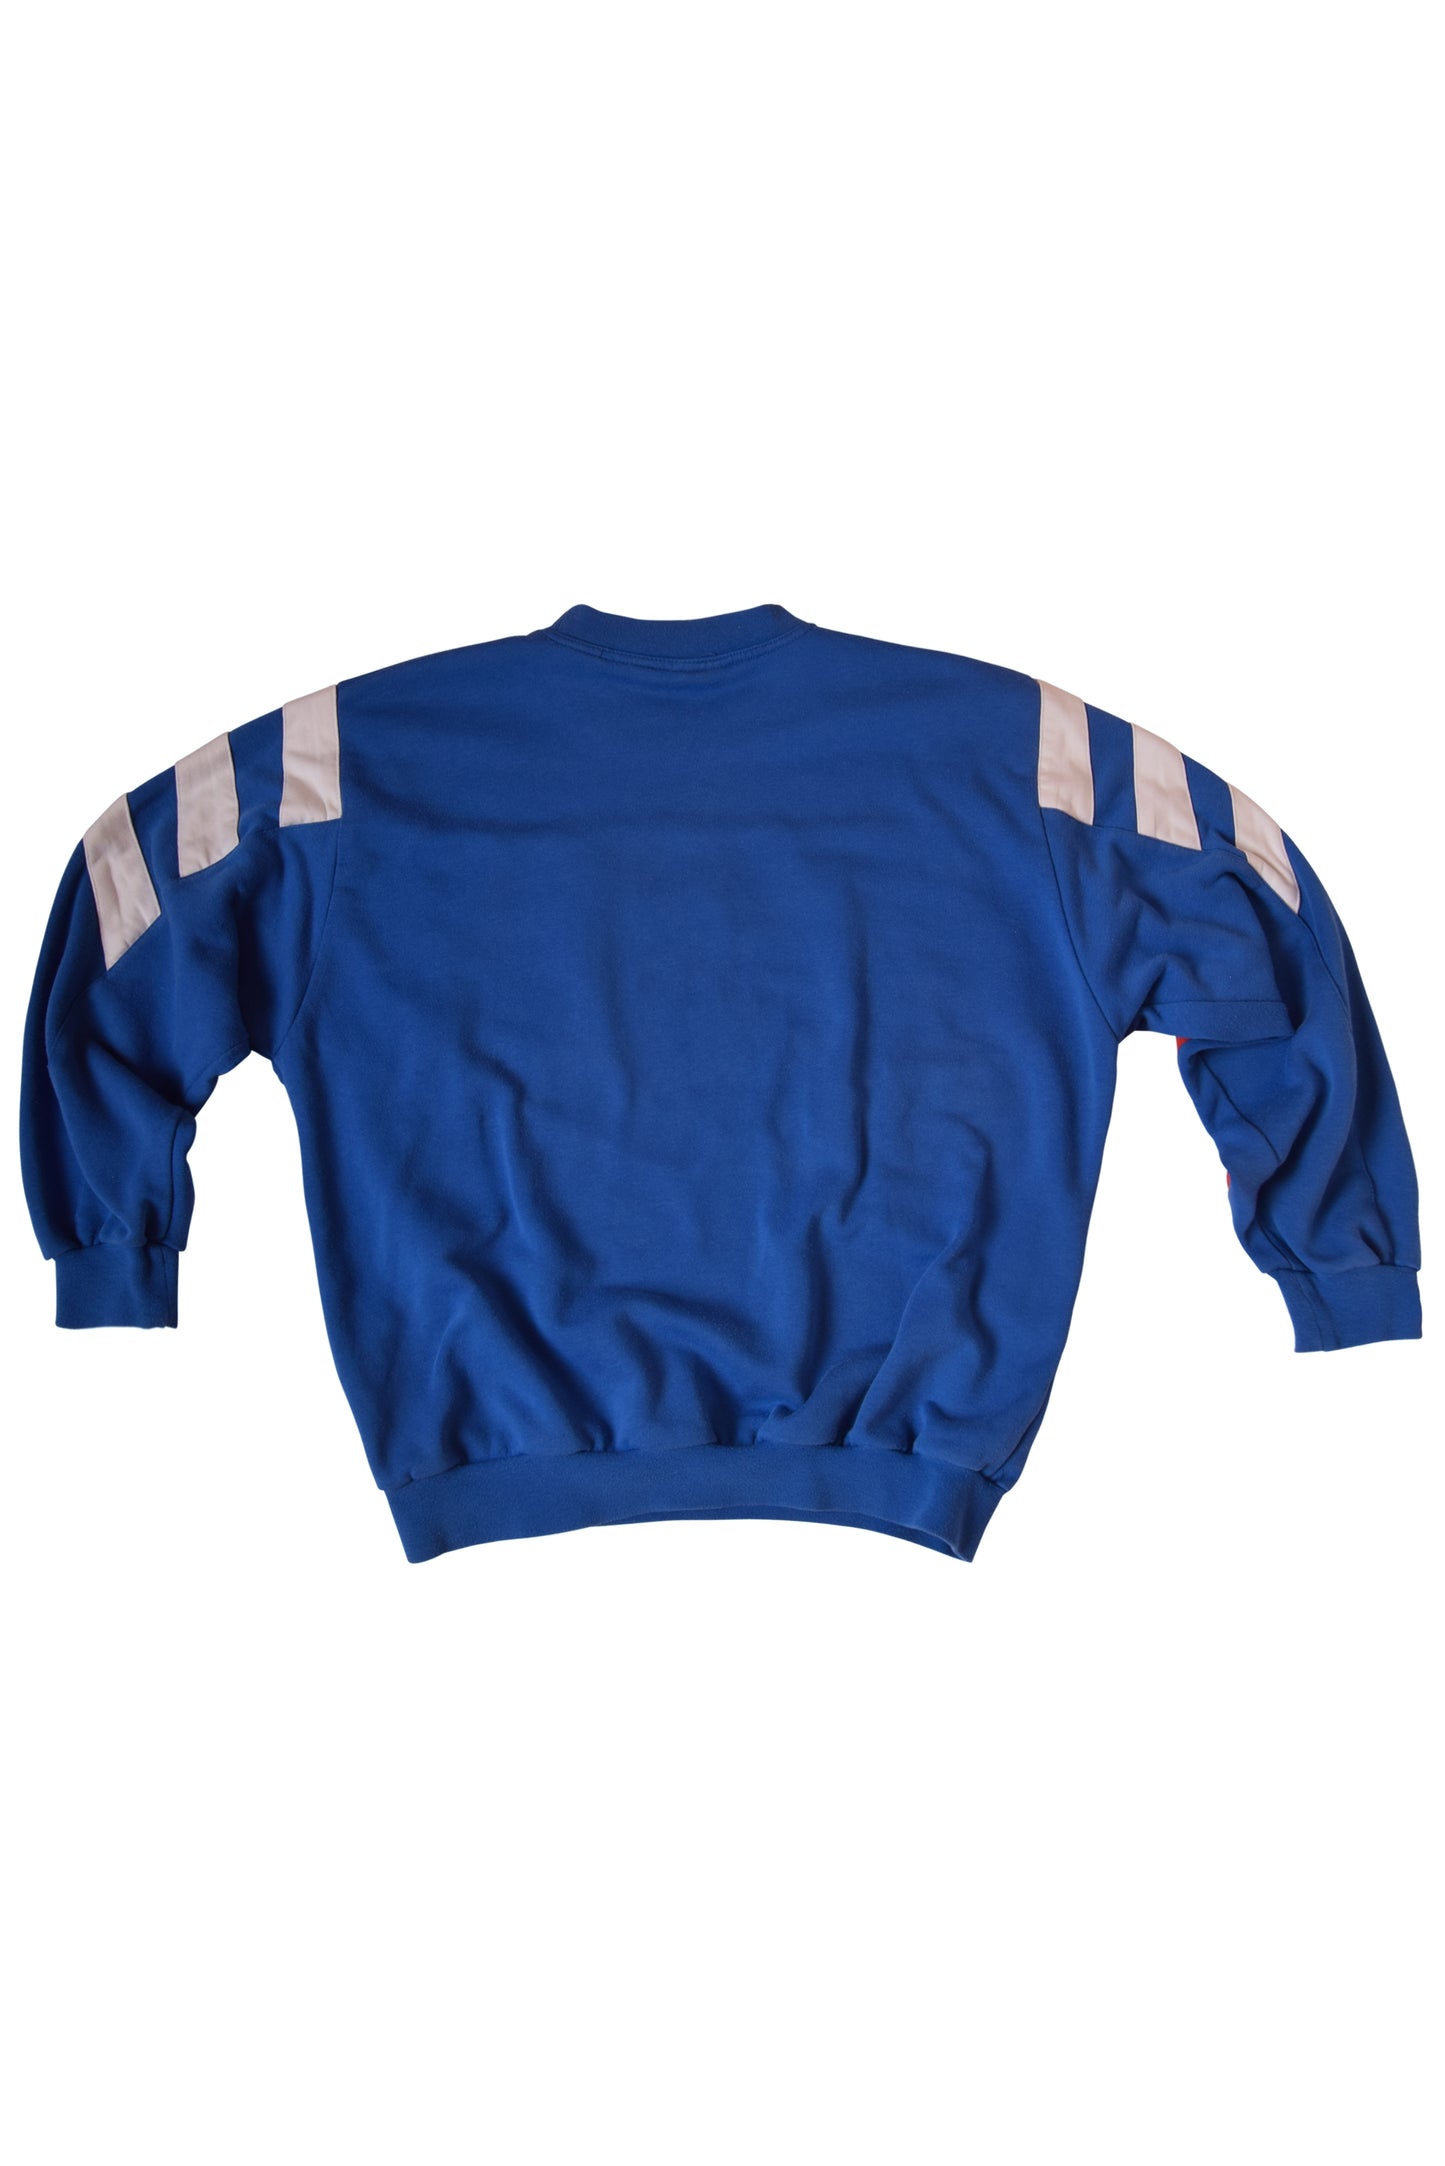 Vintage Bayern Munchen Adidas Sweatshirt 1995-1996